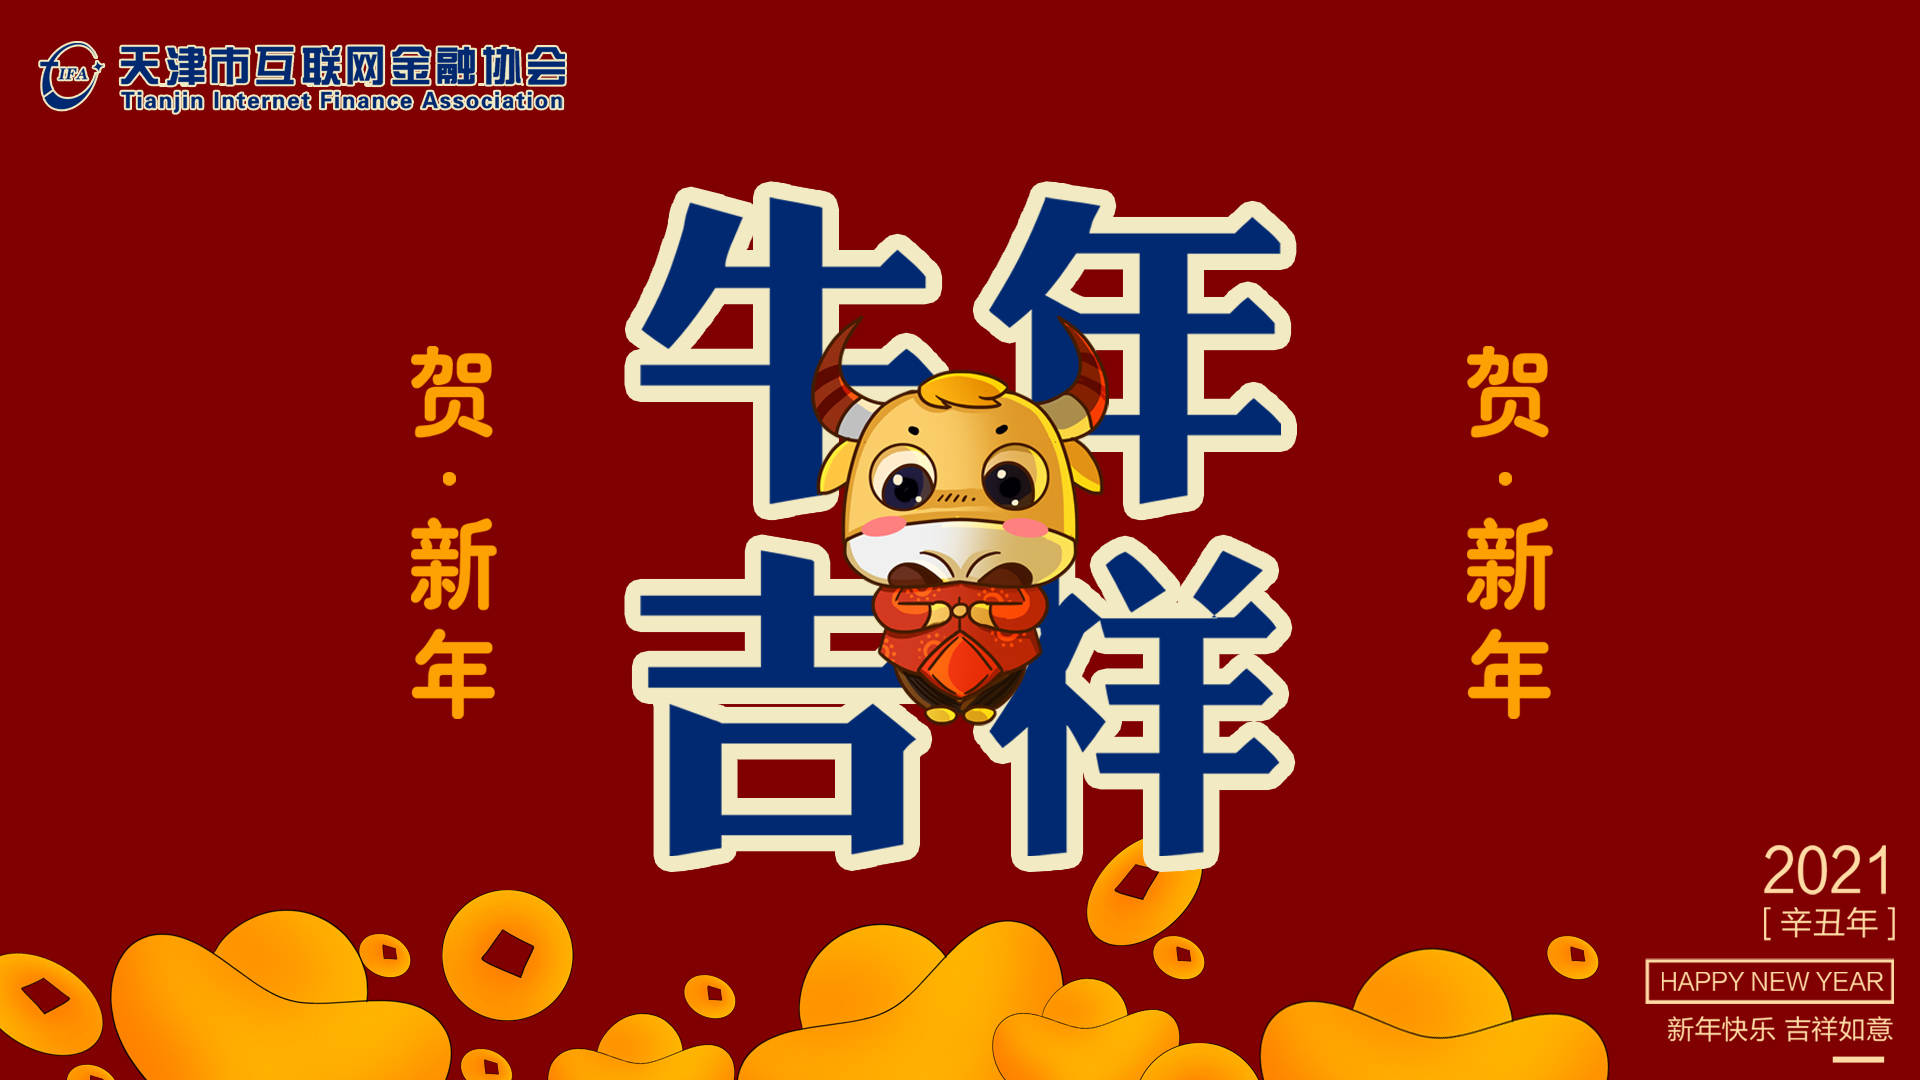 天津市互联网金融协会全体员工恭祝大家新春快乐！